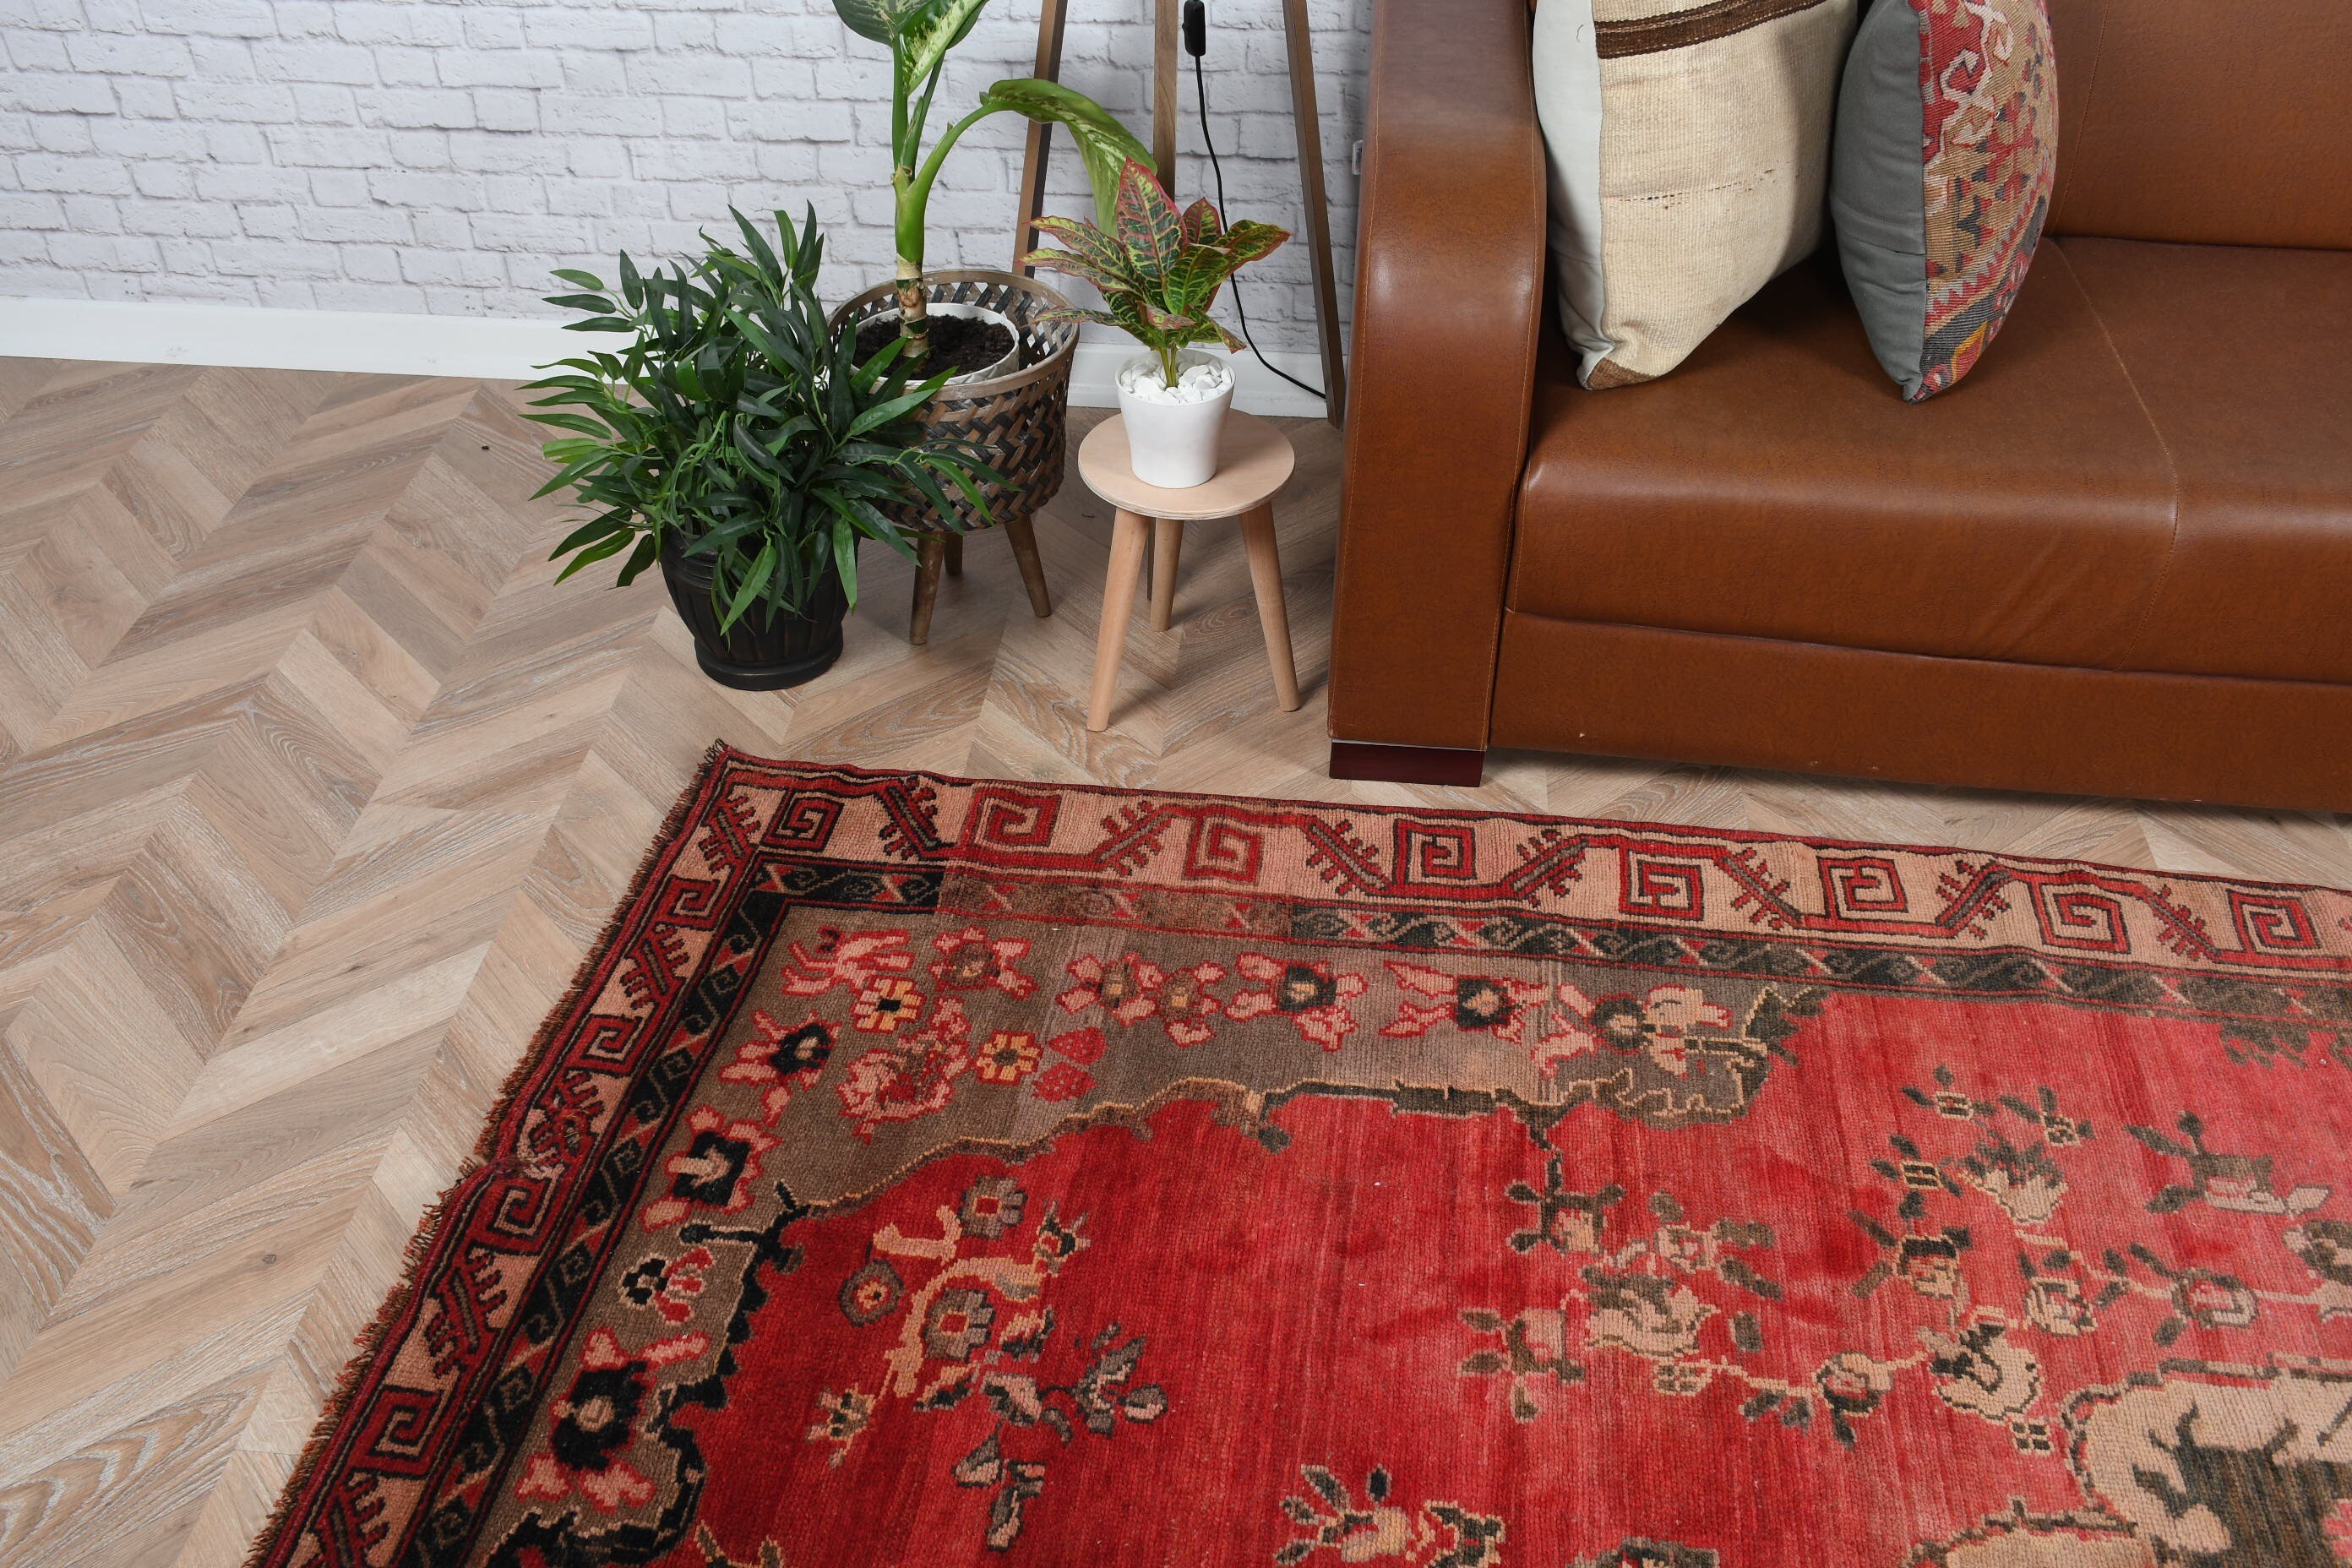 Turkish Rug, Rugs for Bedroom, Floor Rugs, Vintage Rug, Salon Rug, Dining Room Rug, Red  6.2x10.1 ft Large Rugs, Bedroom Rug